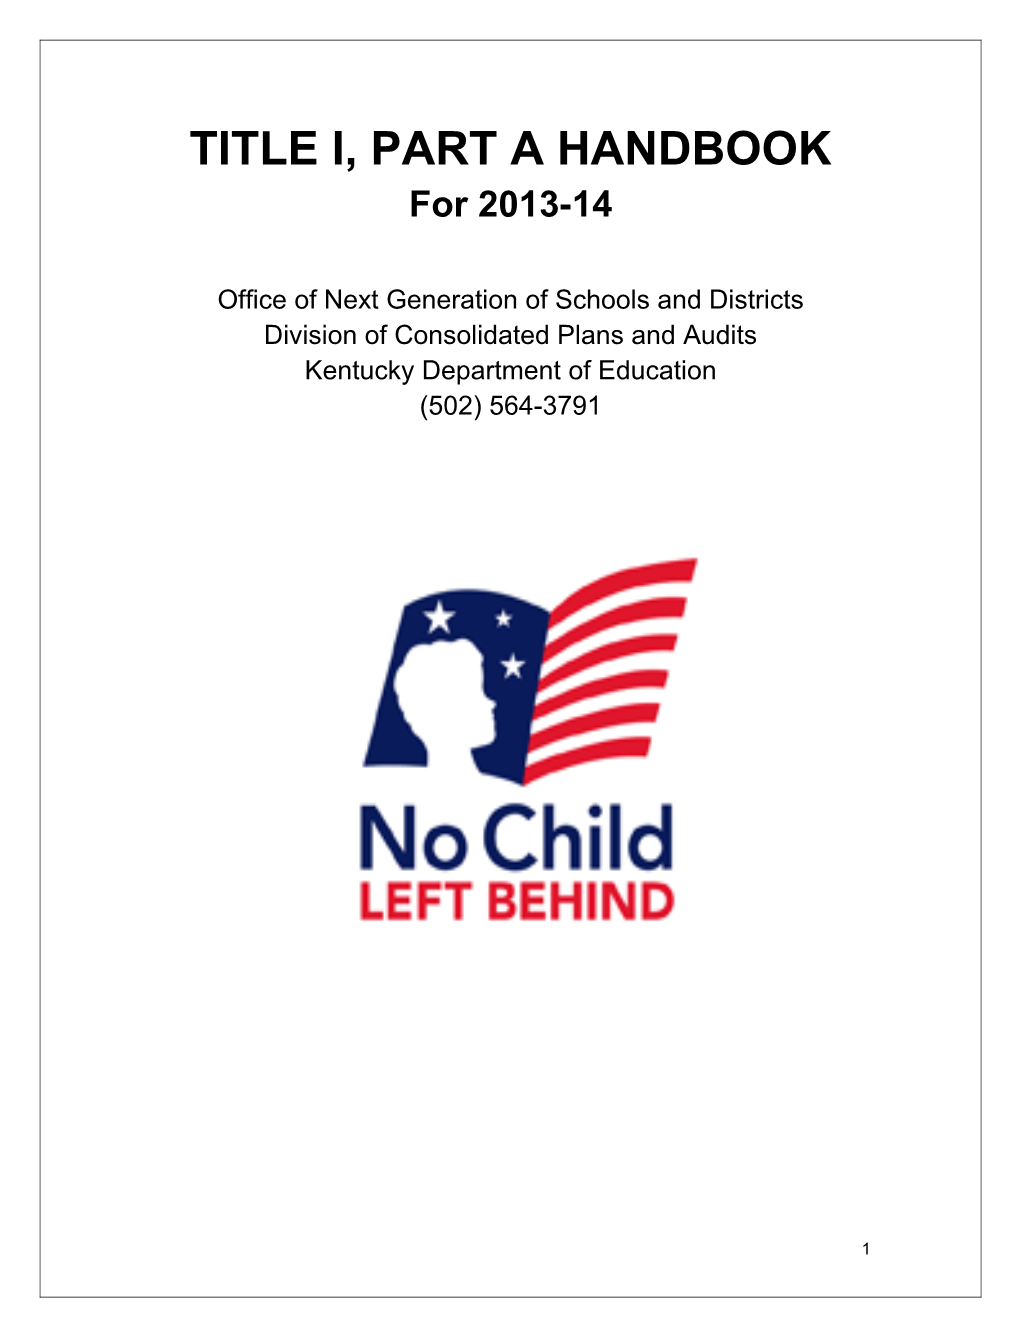 2013-14 Title I Part a Handbook